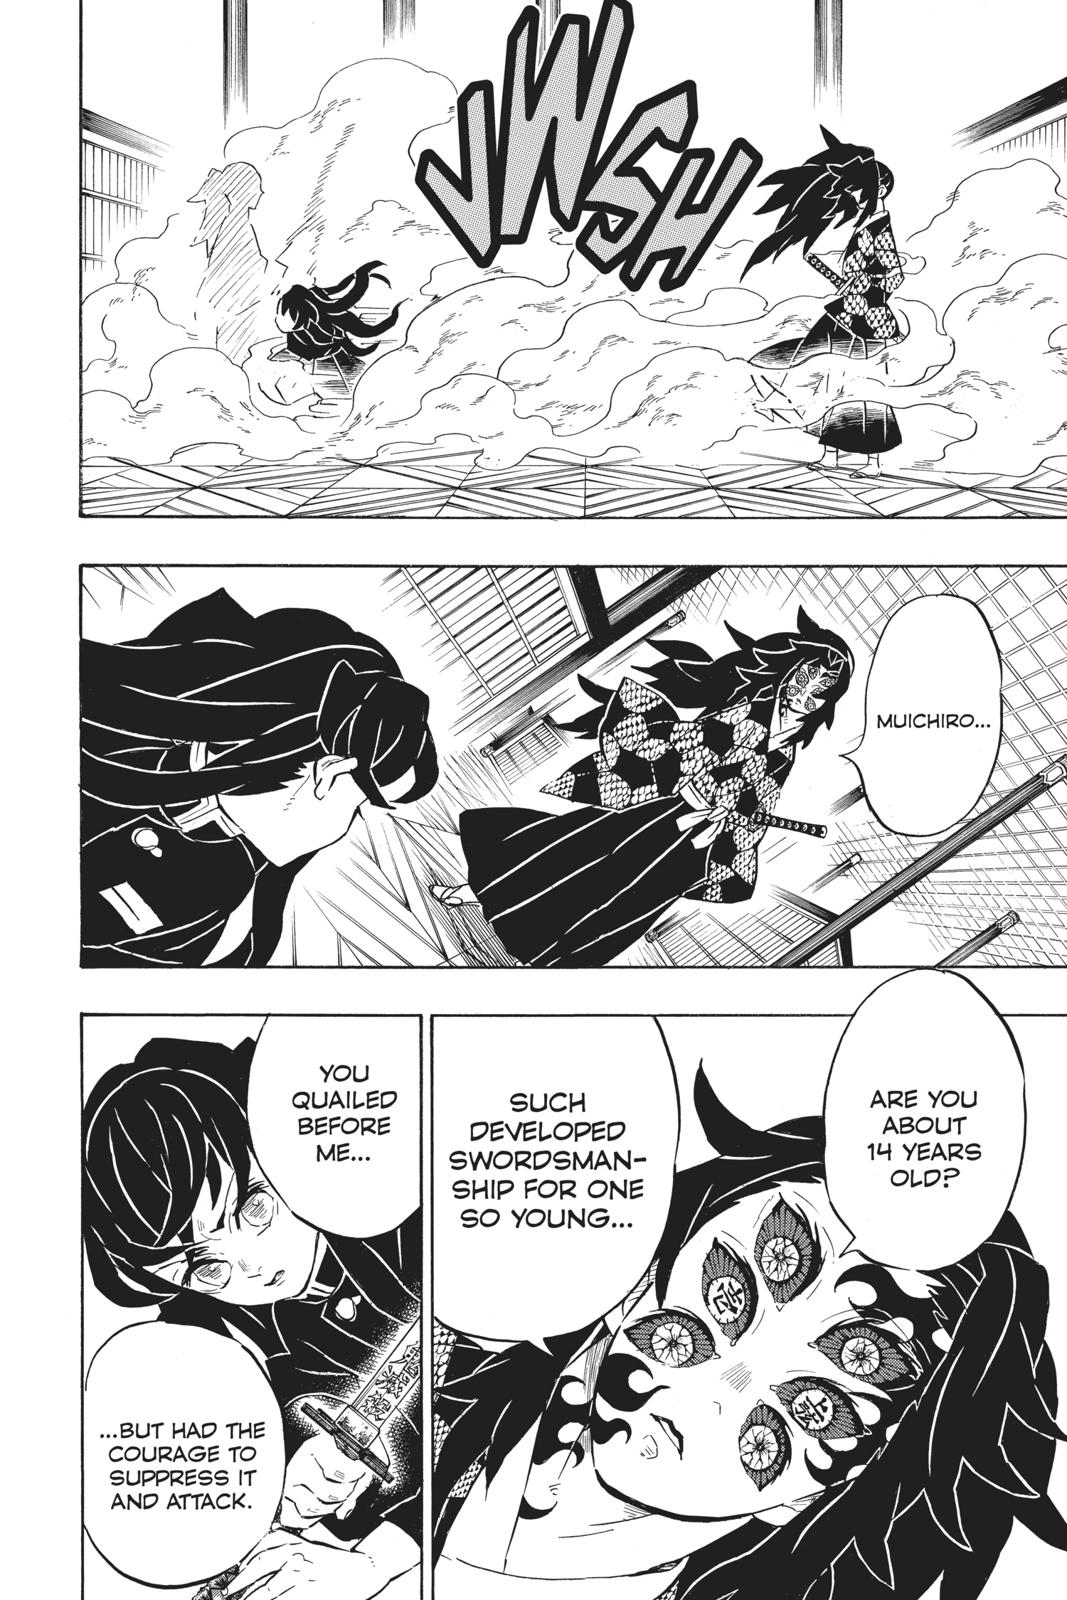 Demon Slayer Manga Manga Chapter - 165 - image 7